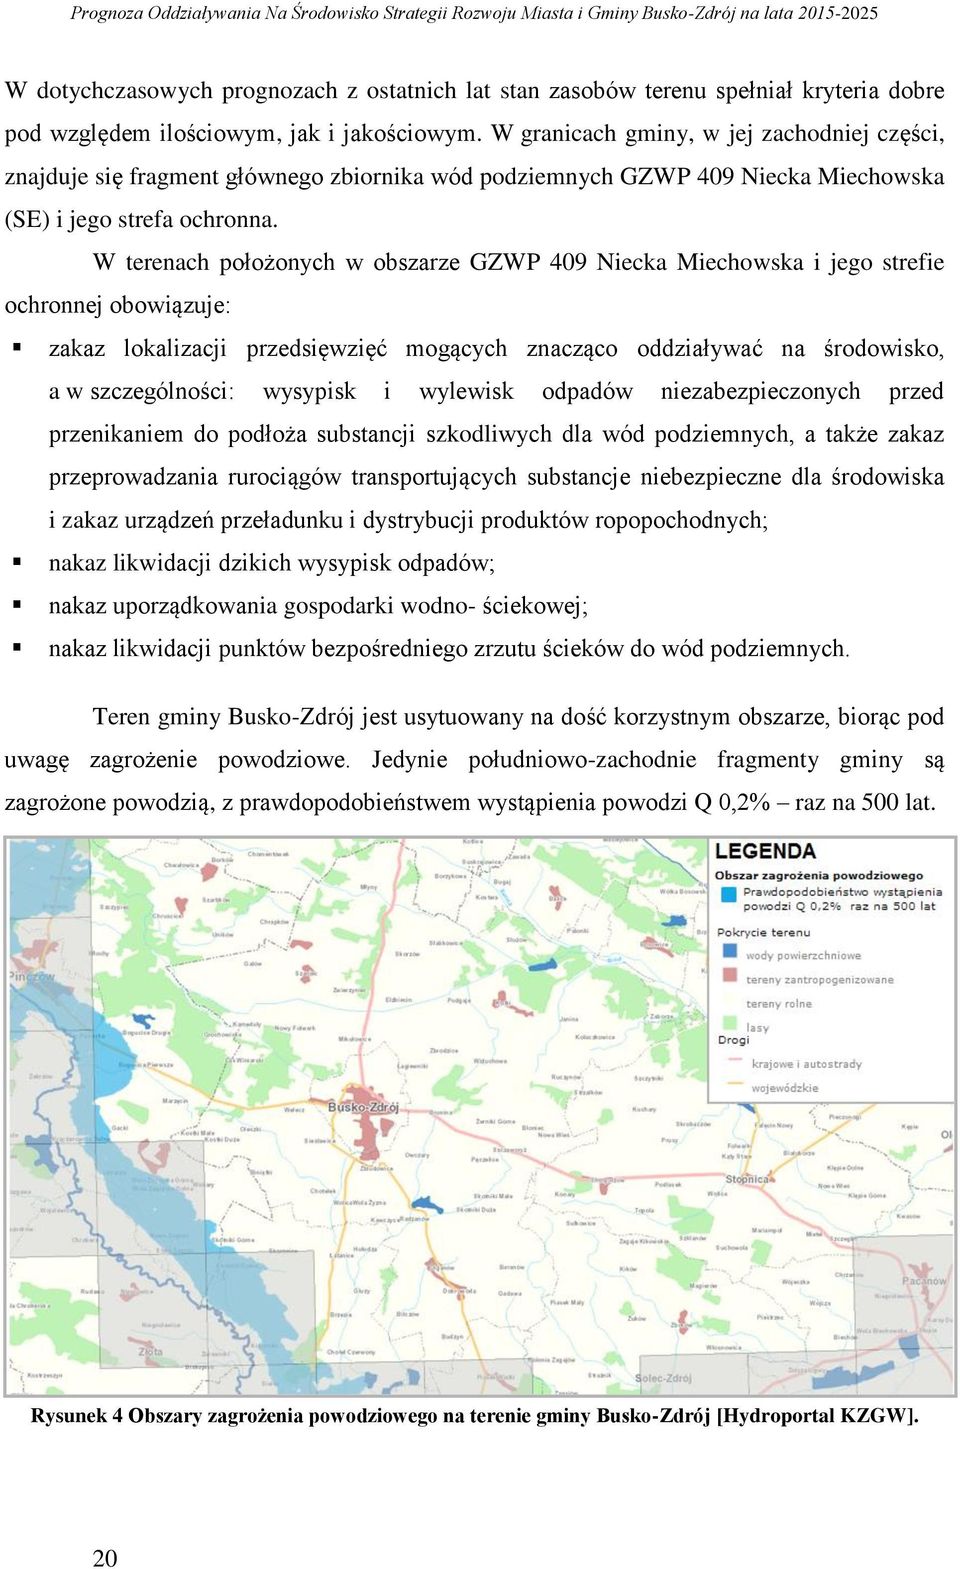 W terenach położonych w obszarze GZWP 409 Niecka Miechowska i jego strefie ochronnej obowiązuje: zakaz lokalizacji przedsięwzięć mogących znacząco oddziaływać na środowisko, a w szczególności: